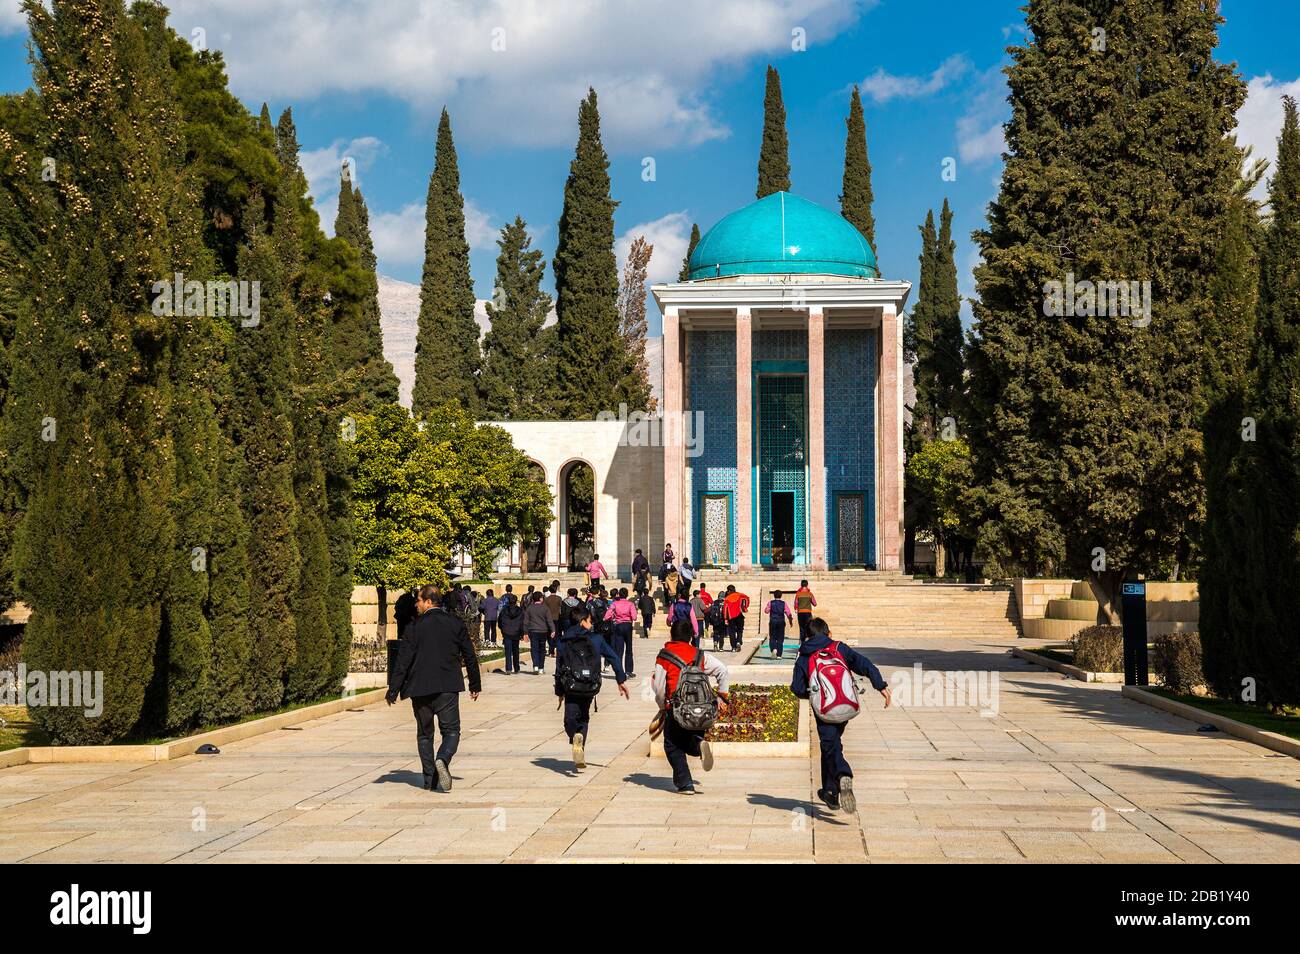 La tumba de Saadi, también conocida como Saadieh, es una tumba y mausoleo dedicado al poeta persa Saadi en la ciudad iraní de Shiraz. Foto de stock